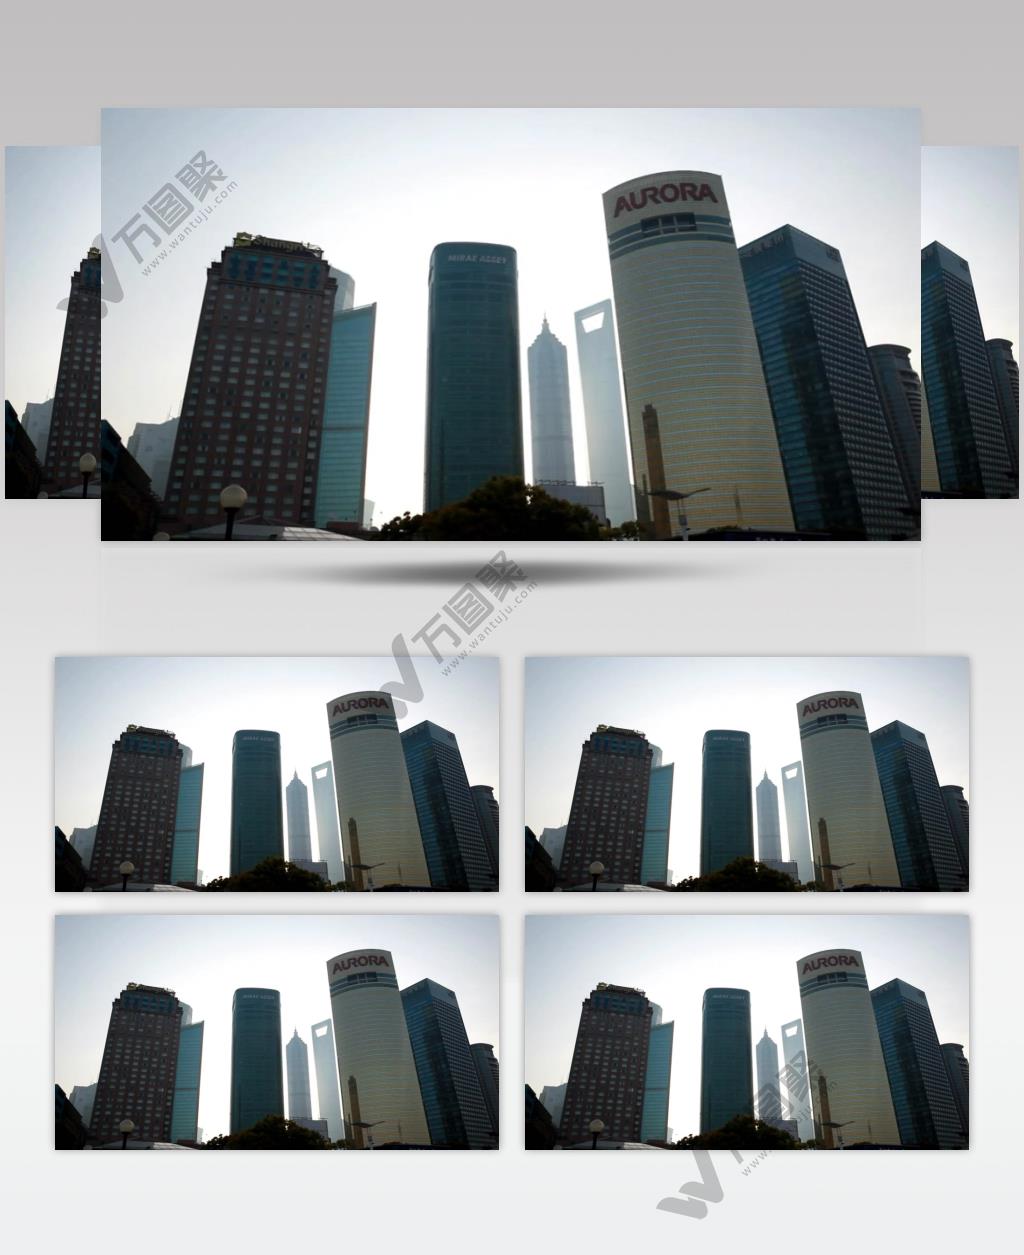 中国上海广州城市地标建筑高端办公楼夜景航拍宣传片高清视频素材城市18